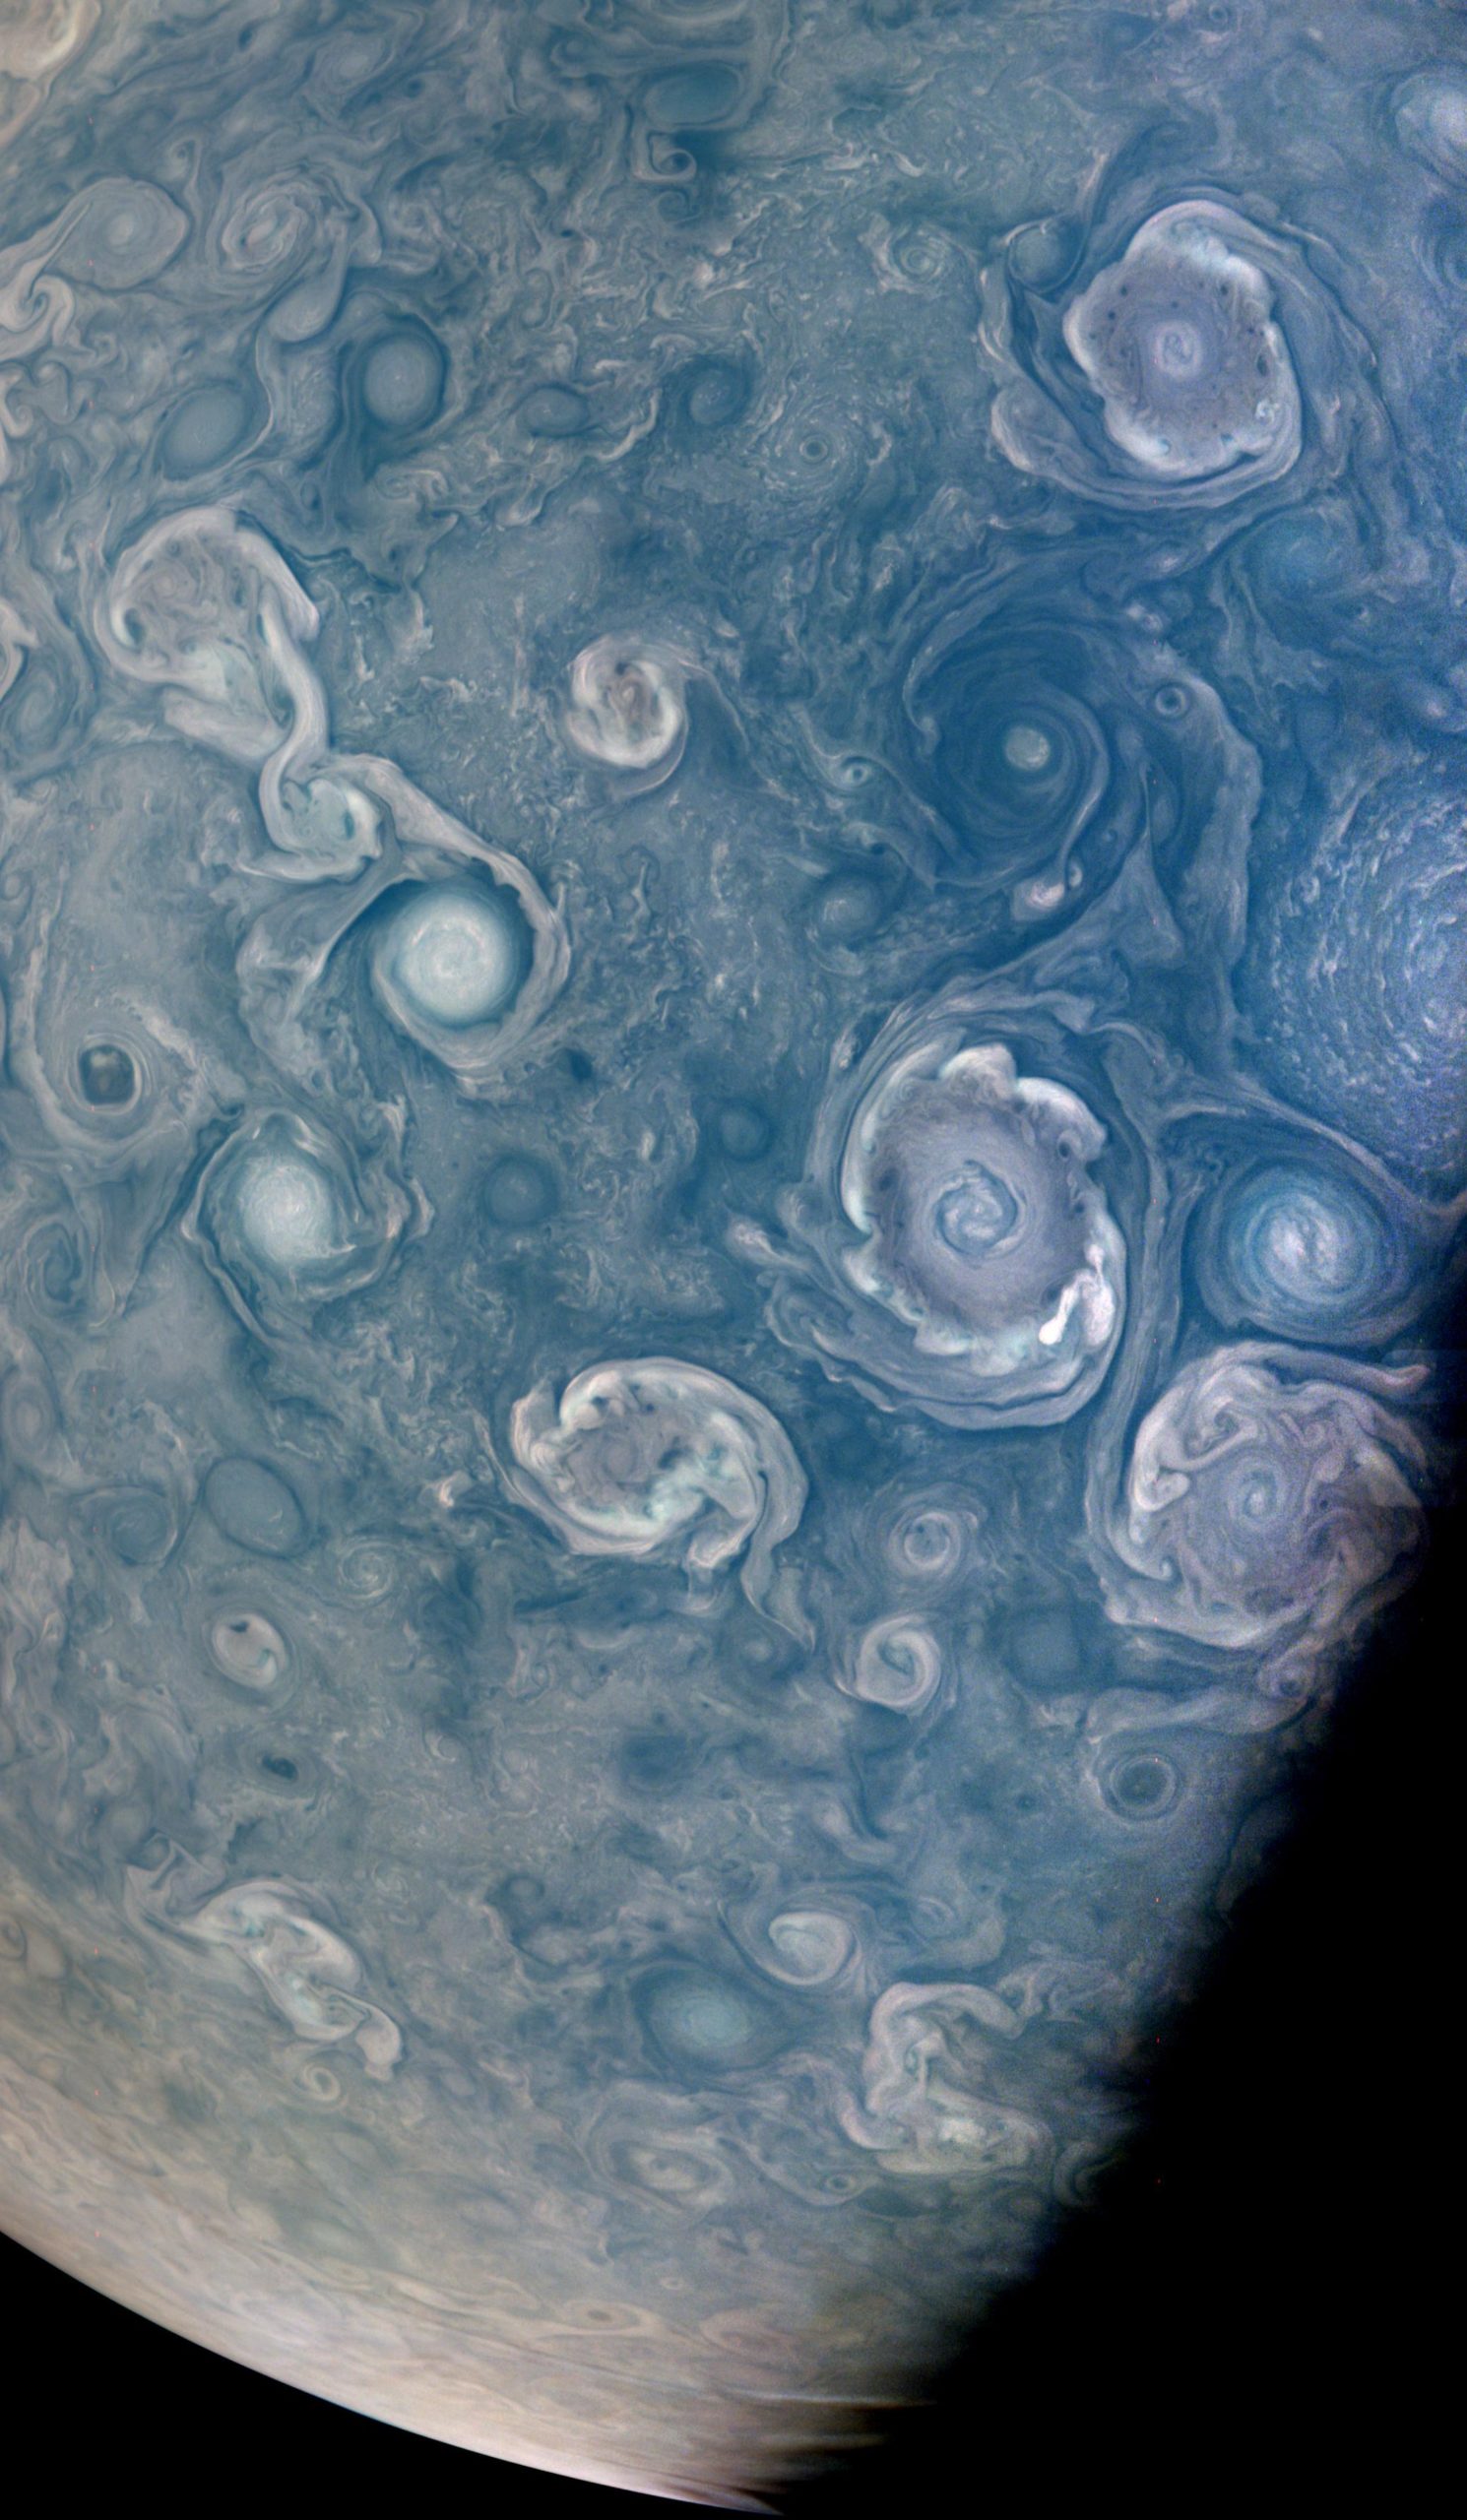 Planeten Jupiter Imponerande NASA-bild avslöjar kolossala stormar cassini nordpolen